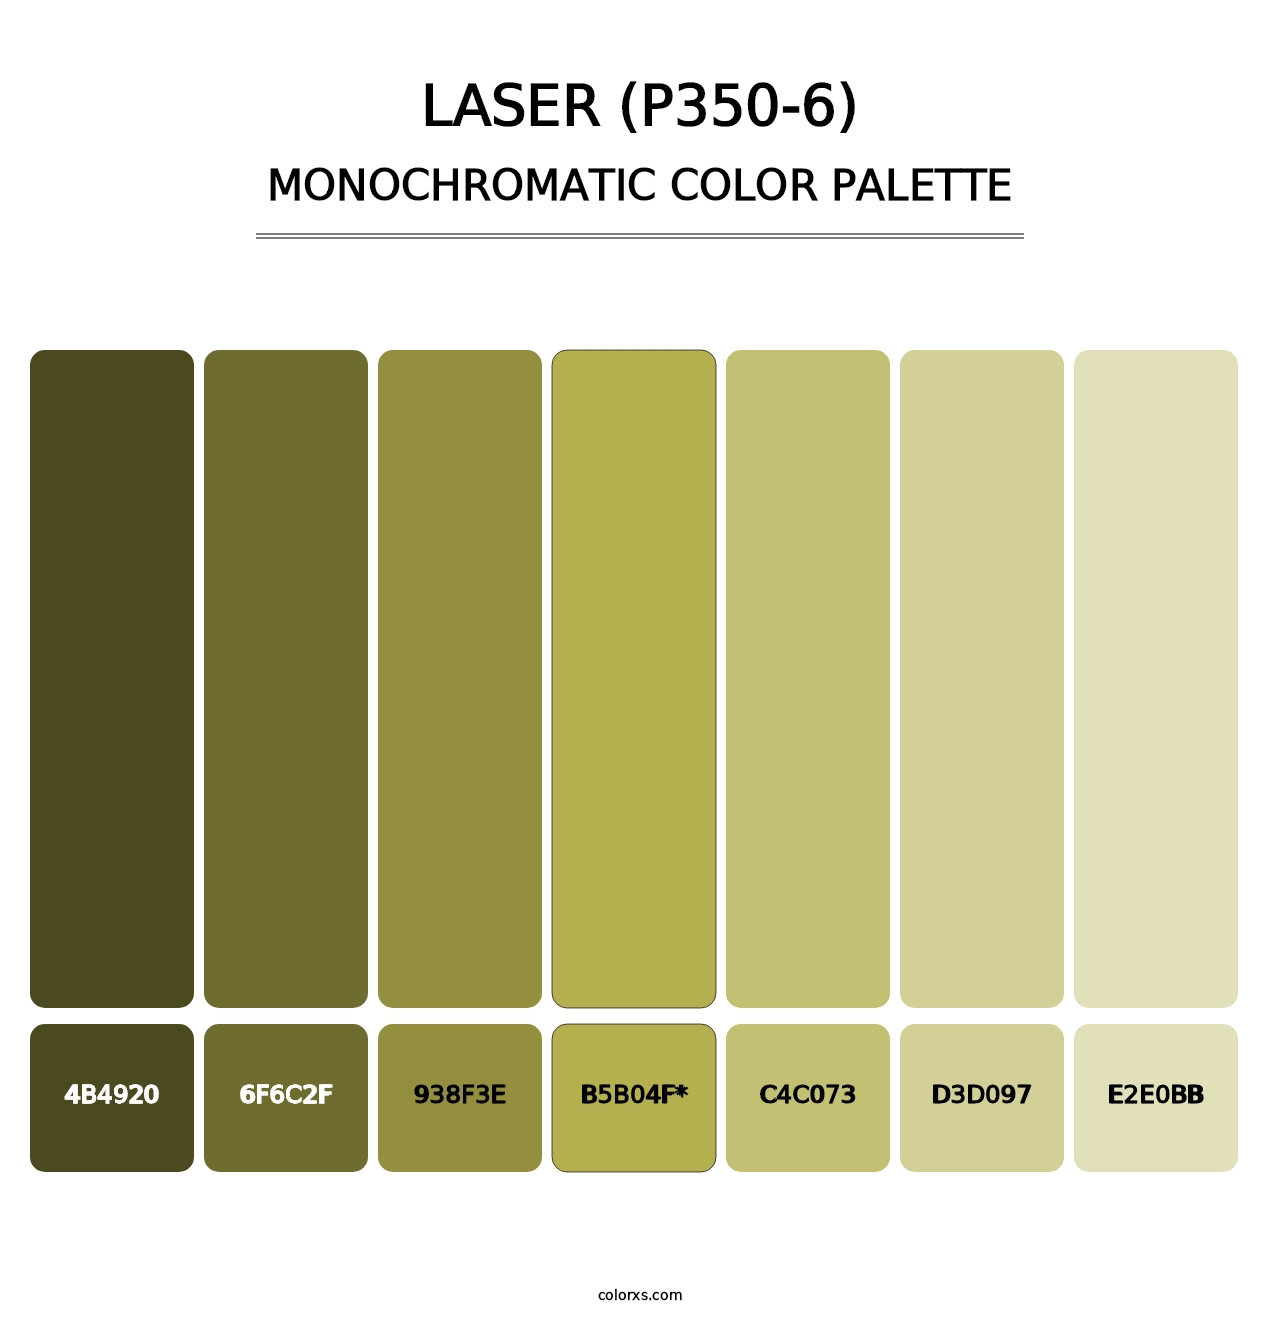 Laser (P350-6) - Monochromatic Color Palette